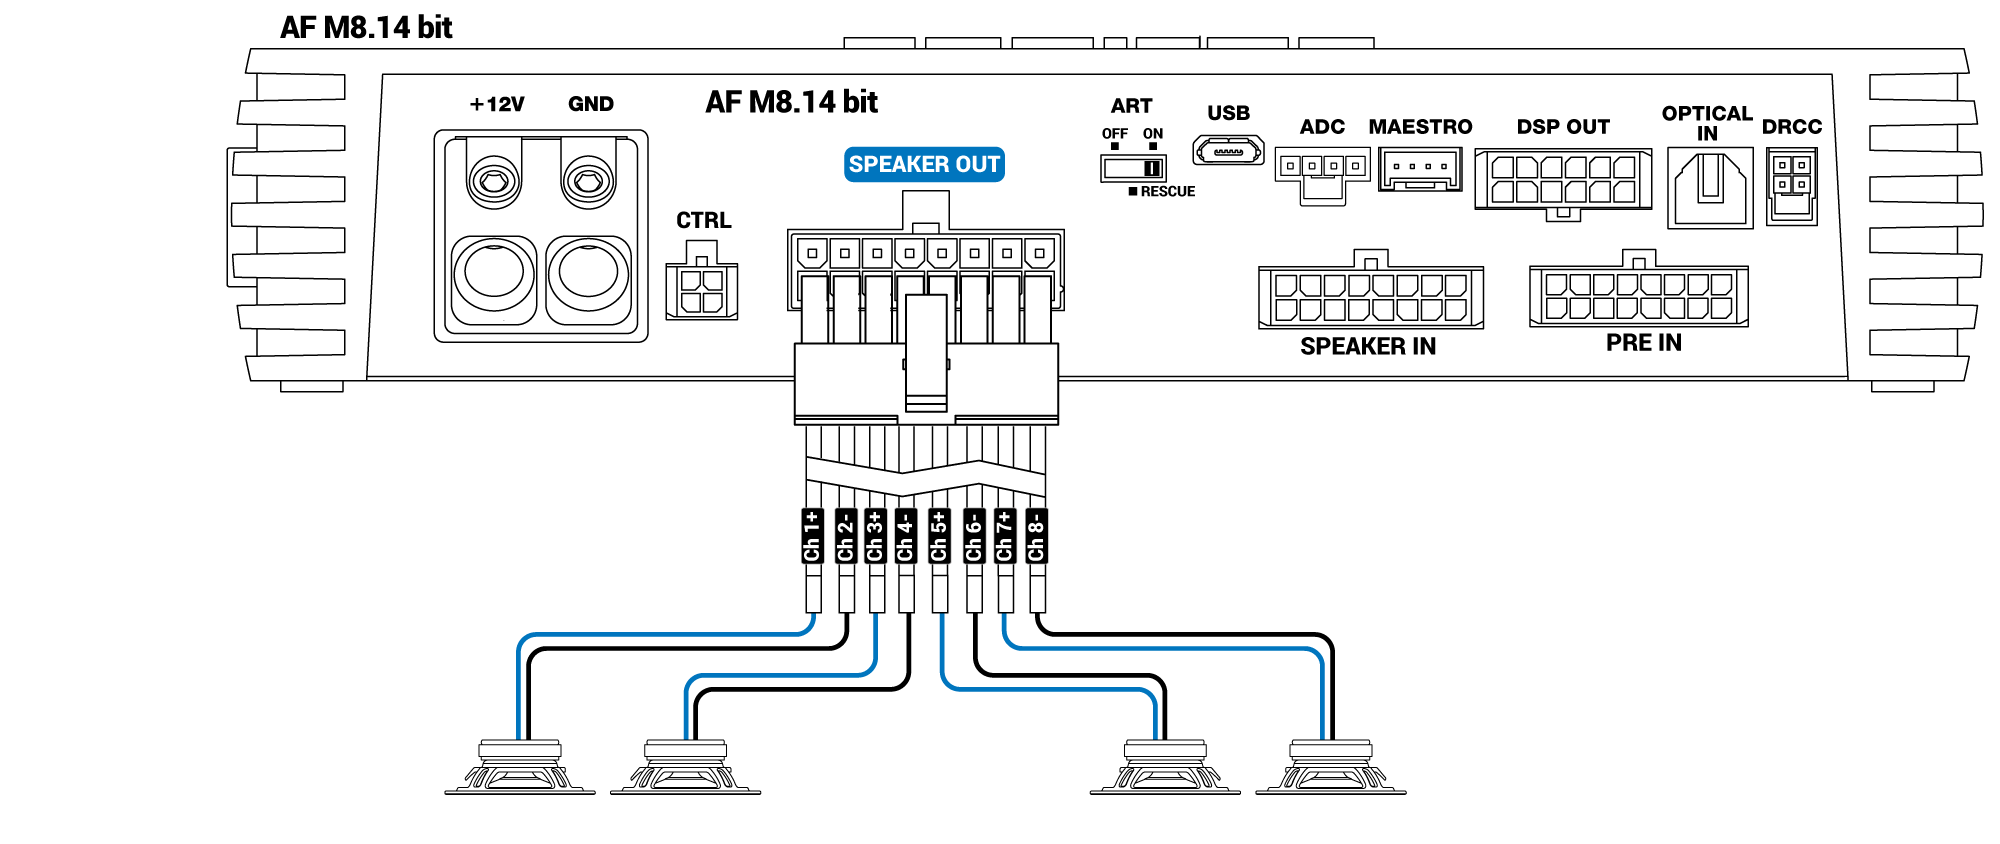 Speaker-out-AF-M8.14-bit_bridge.png